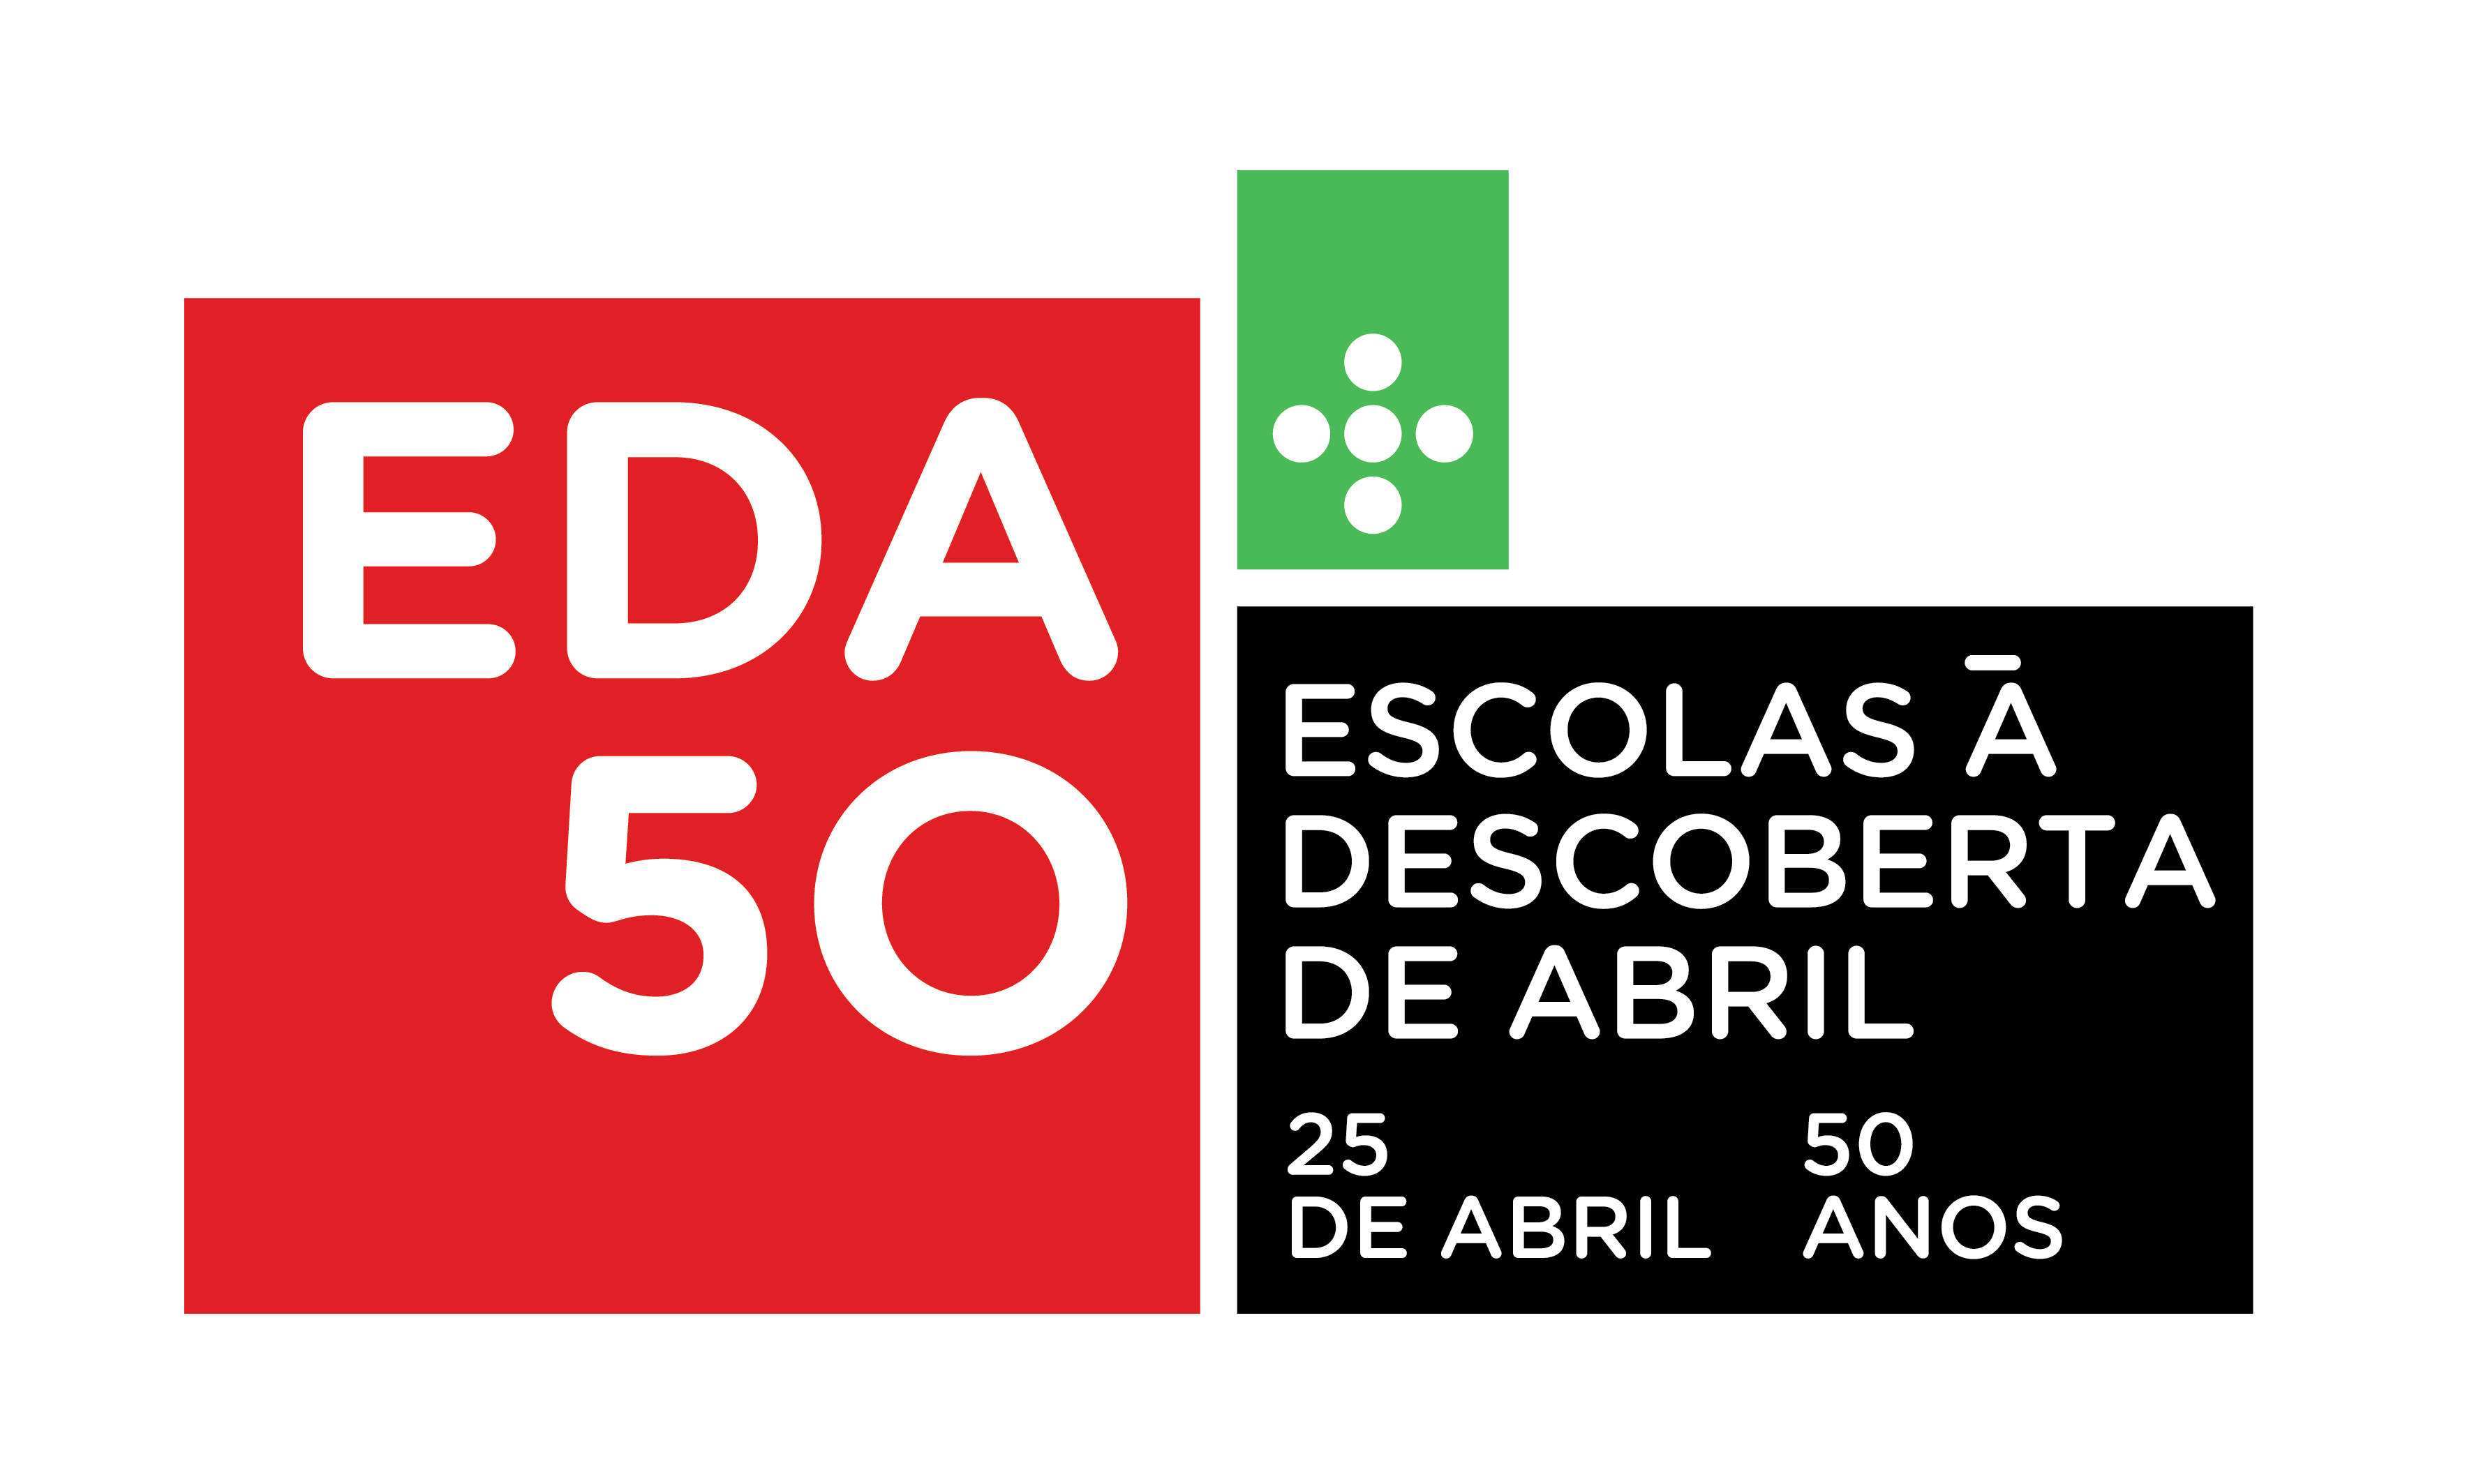 EDA50 